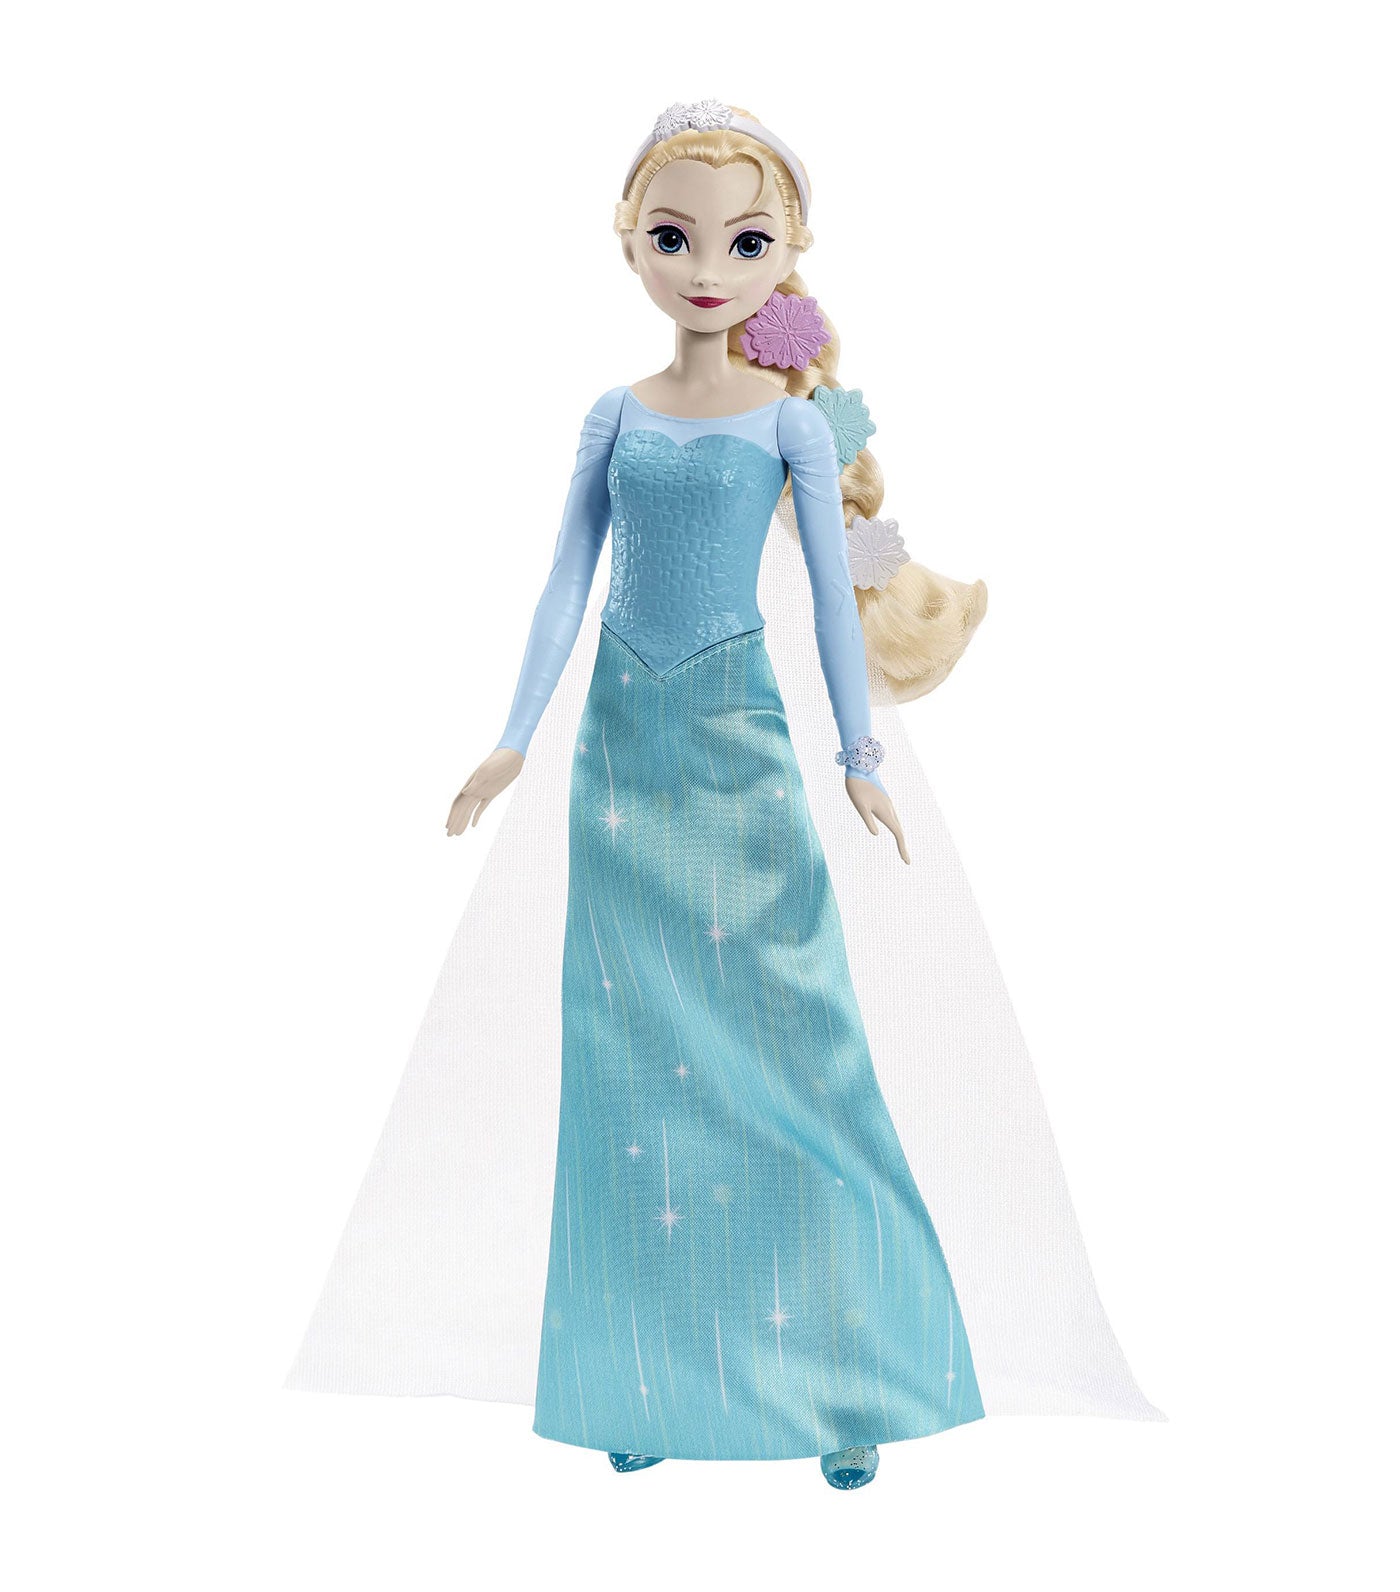 Getting Ready Frozen Elsa Doll